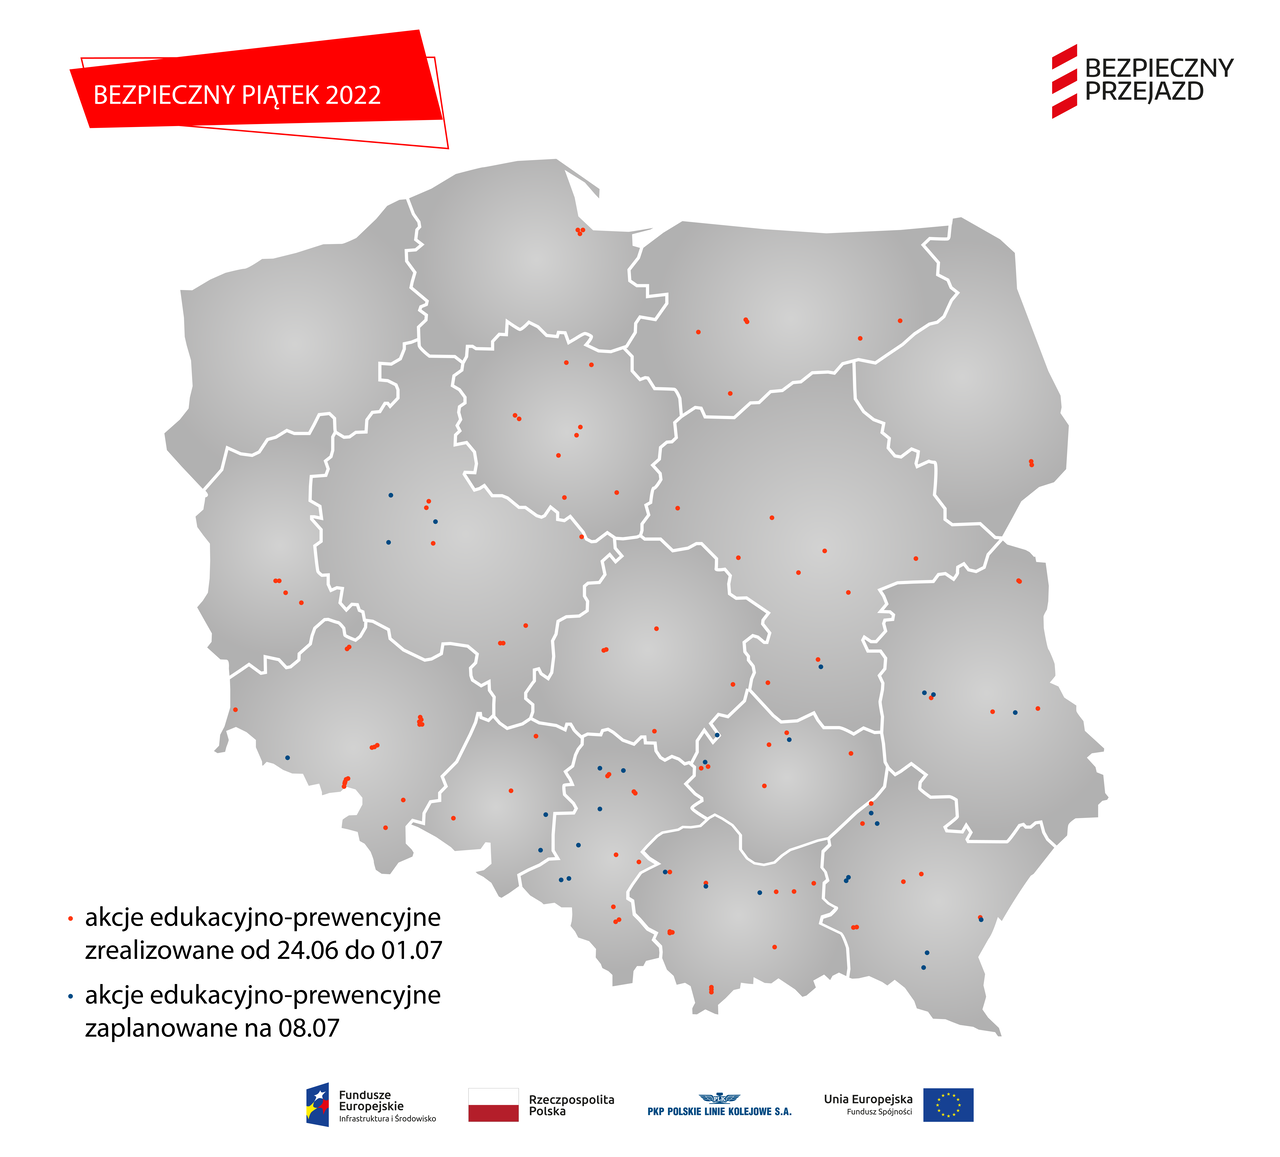 Mapa Polski z naniesionymi lokalizacjami akcji ulotkowych.